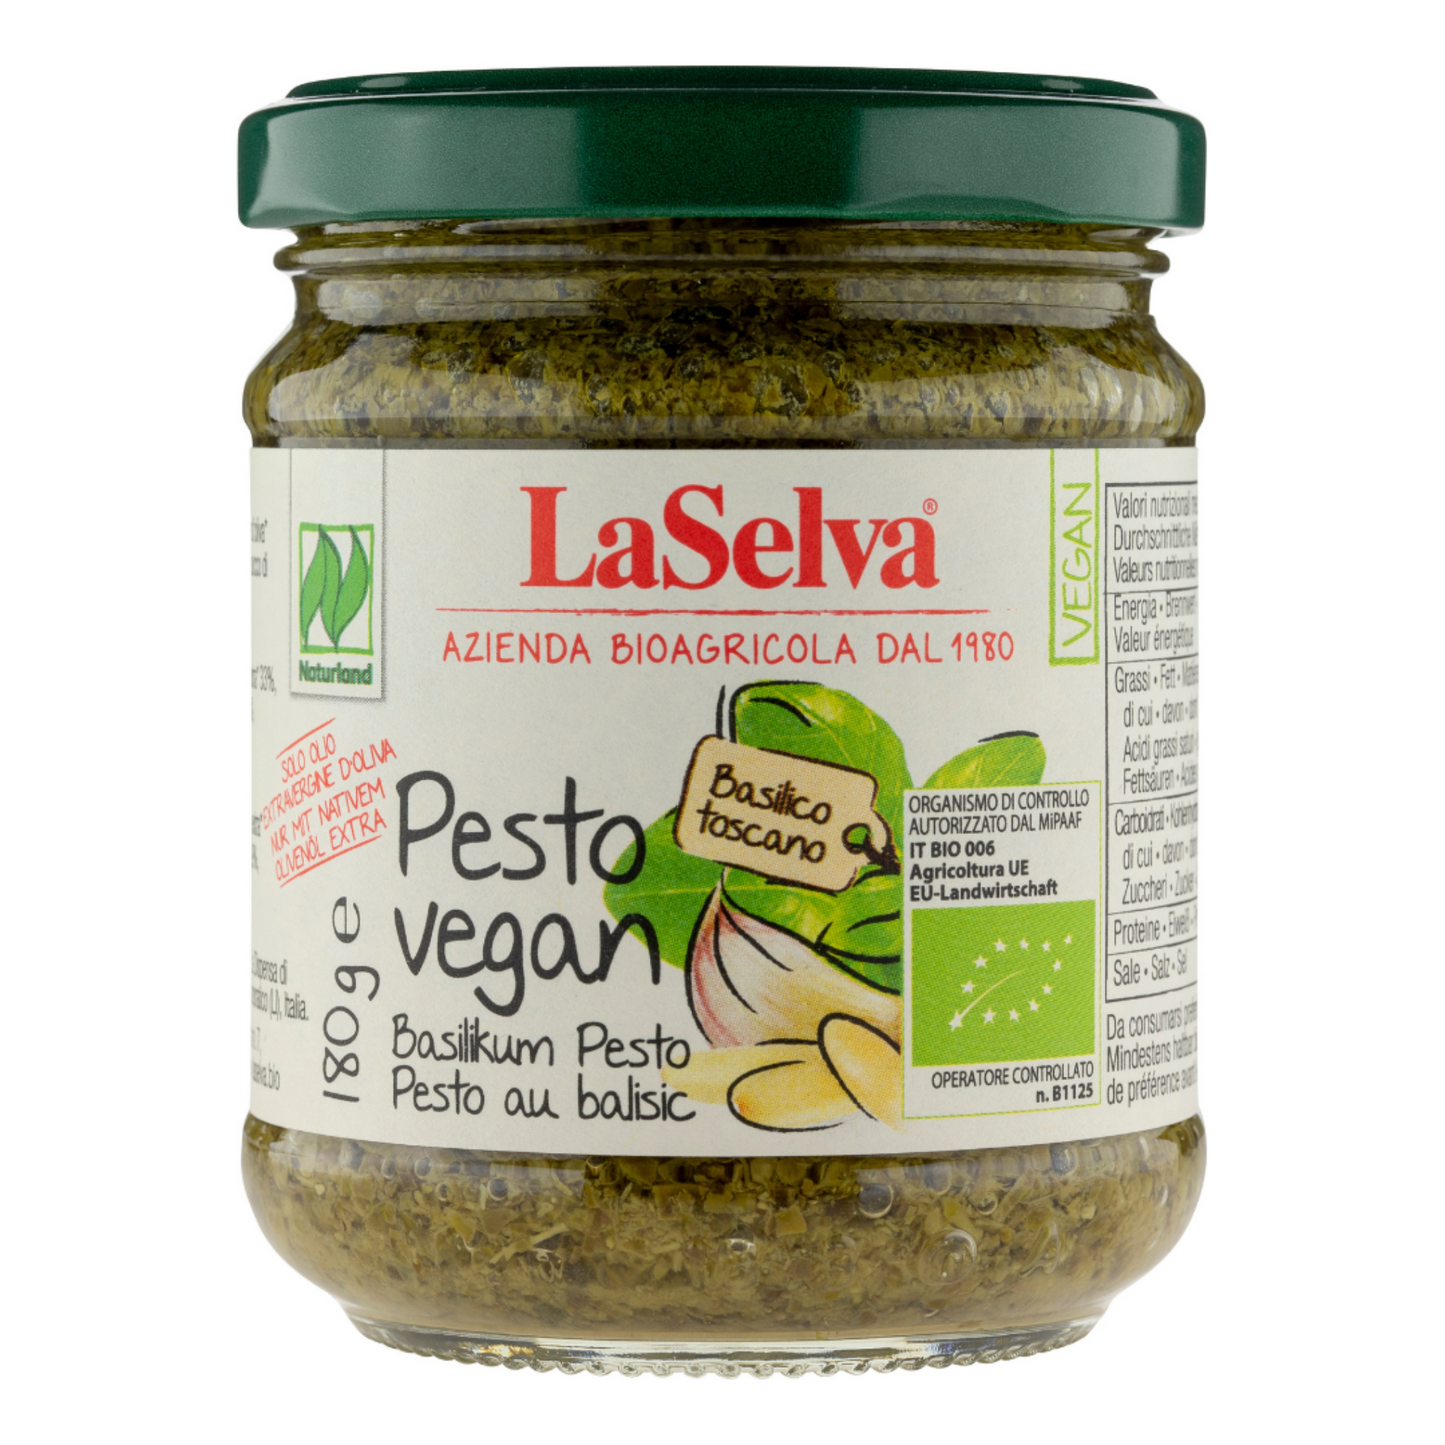 Pesto vegan mit Basilikum, 180g